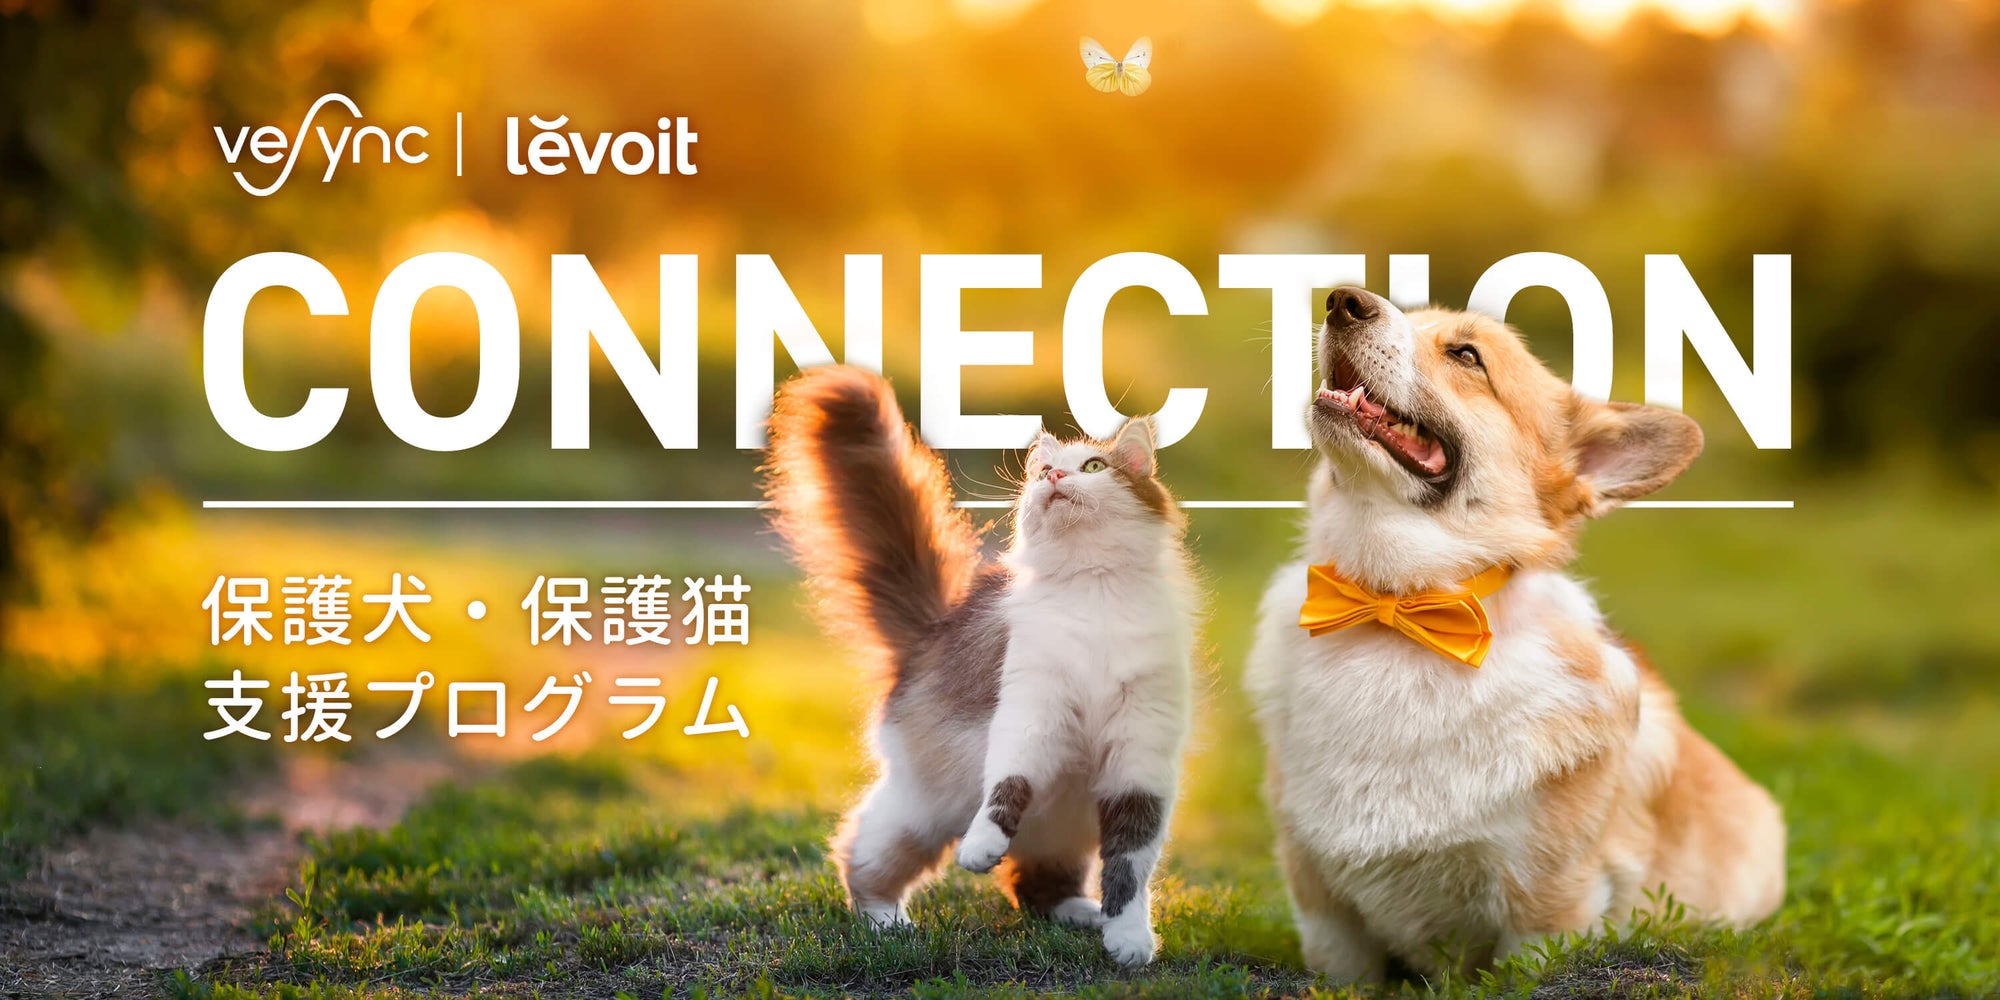 Amazonベストセラーを獲得したグローバル家電メーカーVeSync 「保護犬・保護猫 支援プログラム」を実施、ペット向けの機能搭載のLevoit 空気清浄機などを寄付